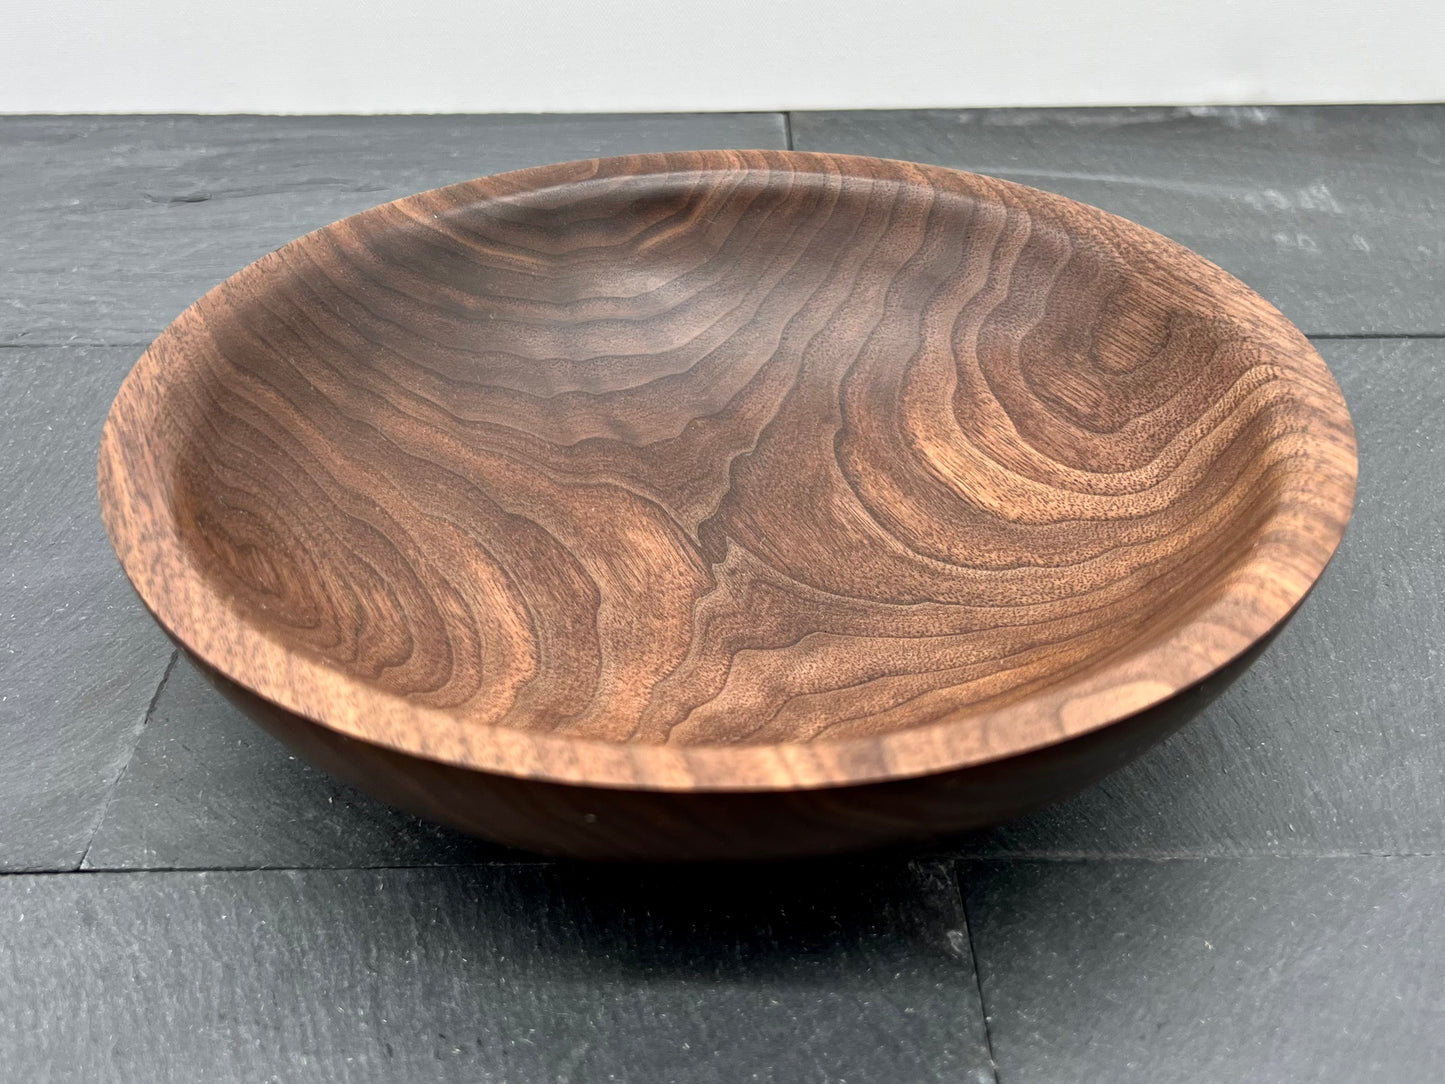 Black Walnut bowl - 8.5” x 2.5”